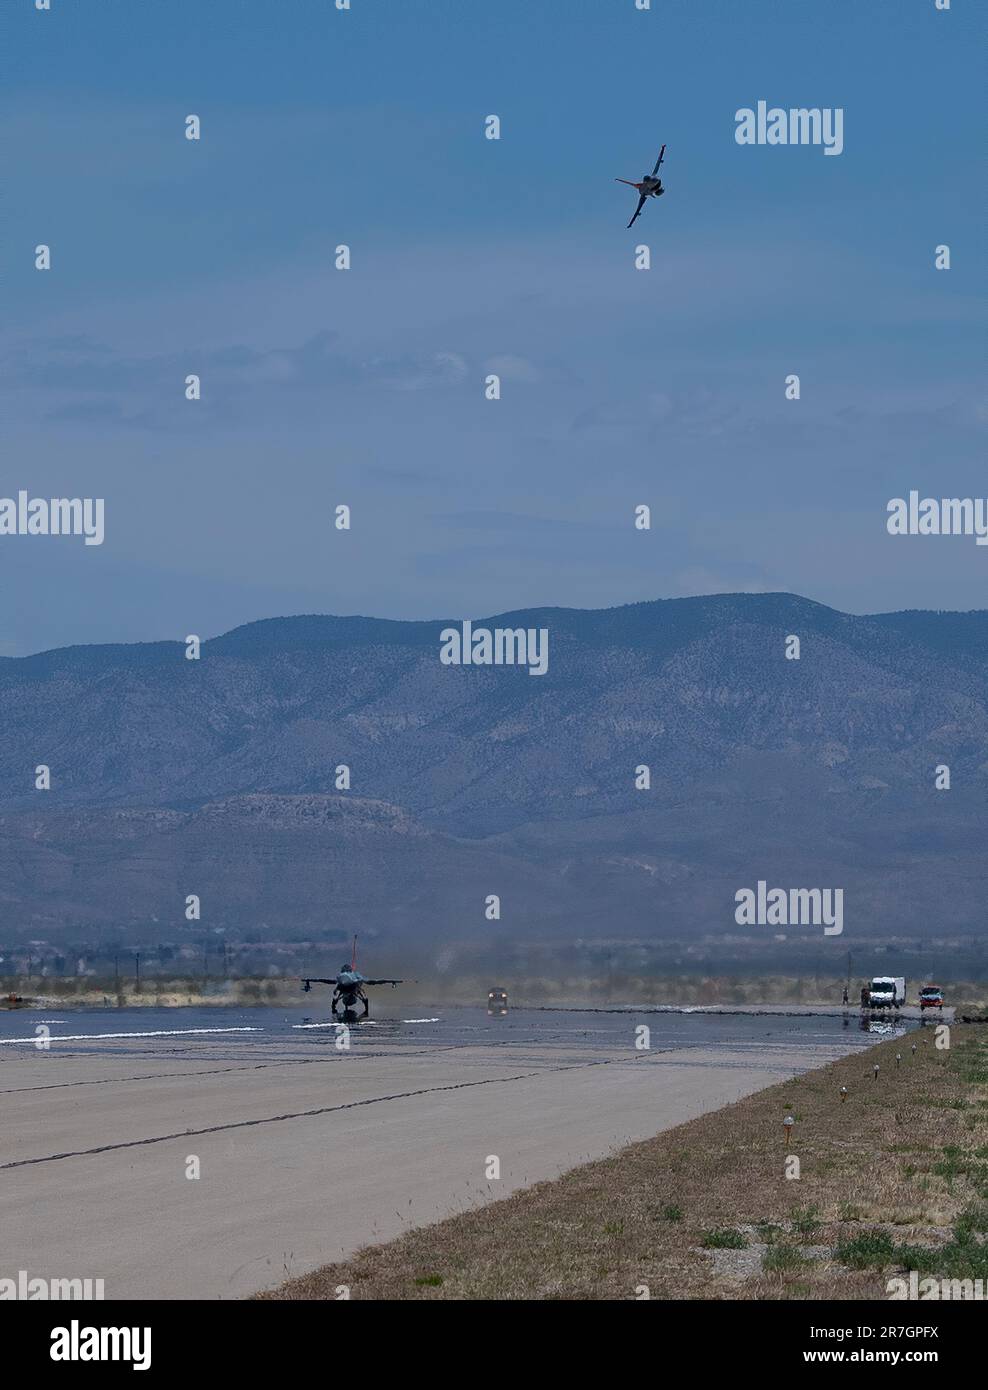 Ein QF-16 Full Scale Aerial Target manövriert als Nächstes einen QF-16, um seinen Start während einer Generalprobe für einen bevorstehenden Raketentest auf dem Luftwaffenstützpunkt Holloman, New Mexico, zu überwachen. (USA Air Force Foto von Tech. Sgt. Perry Aston) Stockfoto